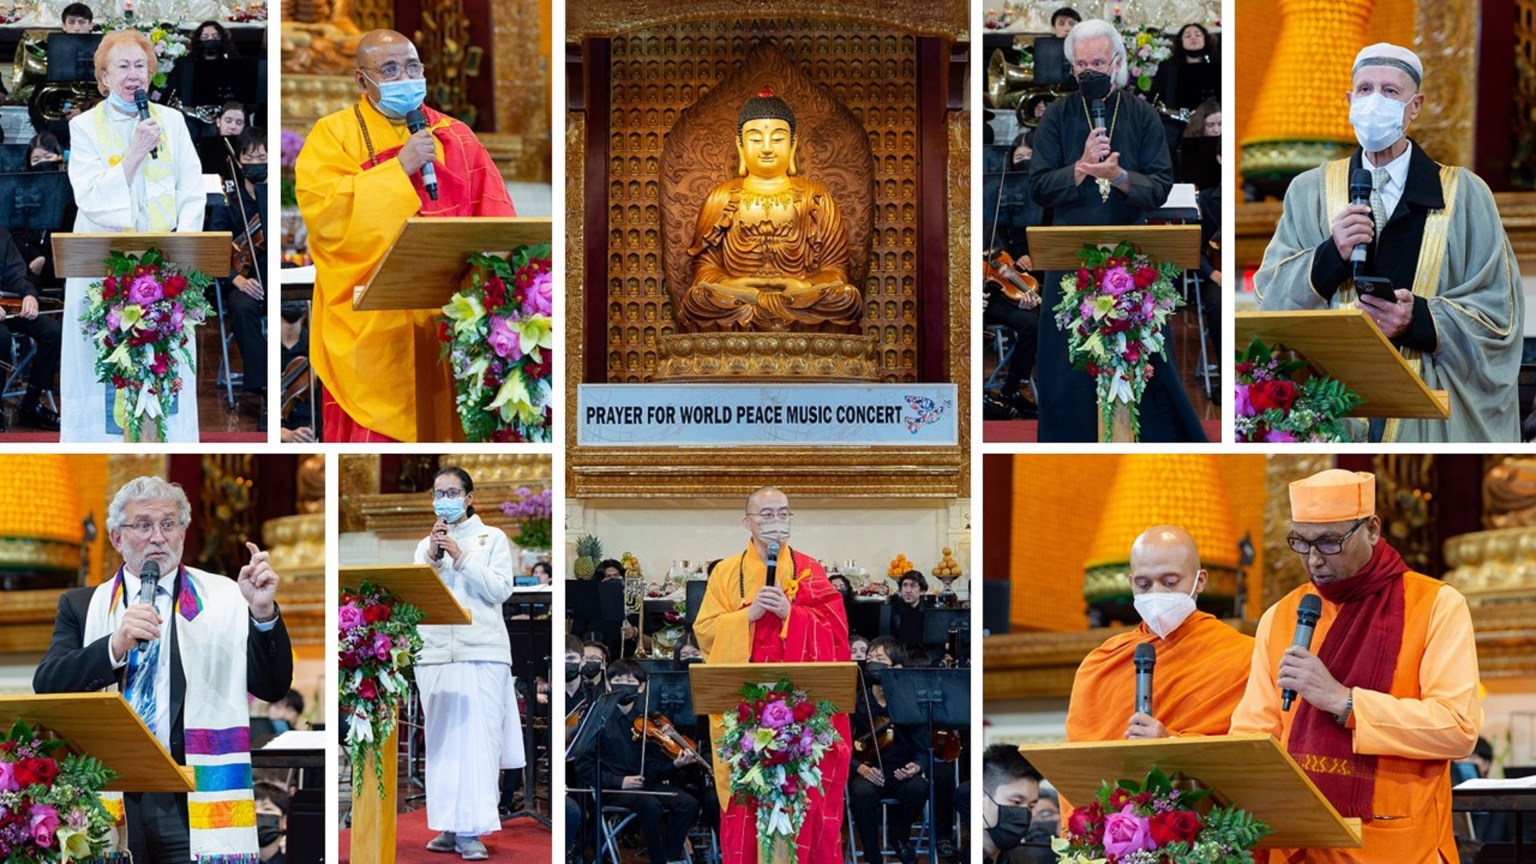 「祈求世界和平音樂會」，結合多元宗教的和平祈願祝禱，跨越宗教藩籬